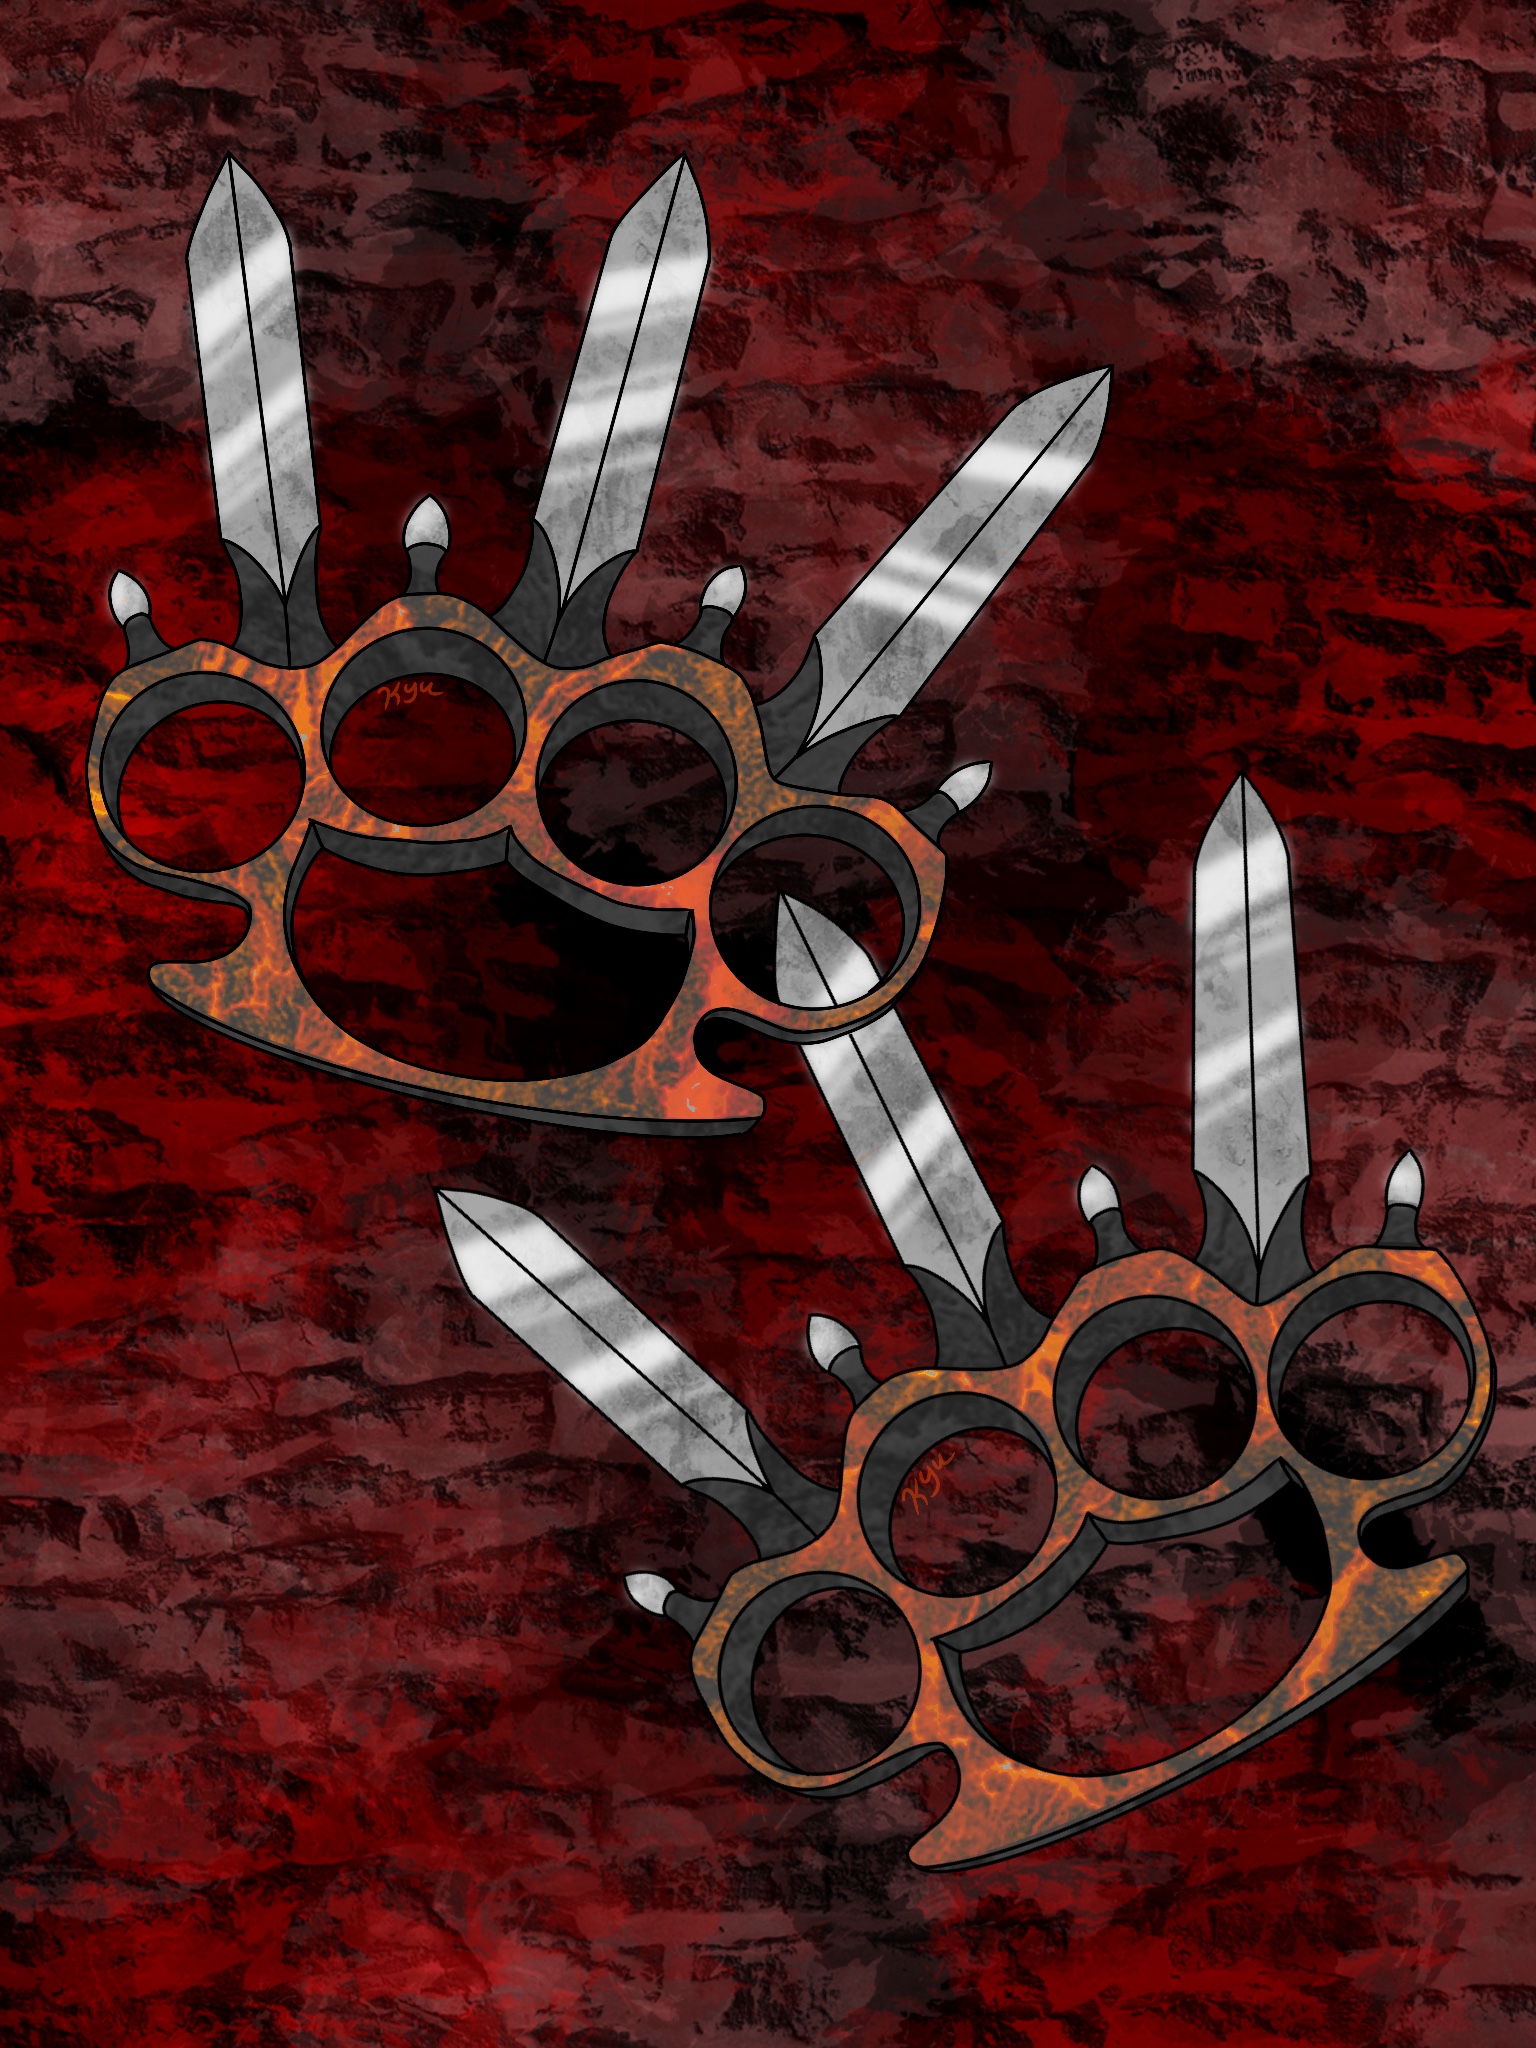 Metal Knuckles by SRB2-Blade on DeviantArt